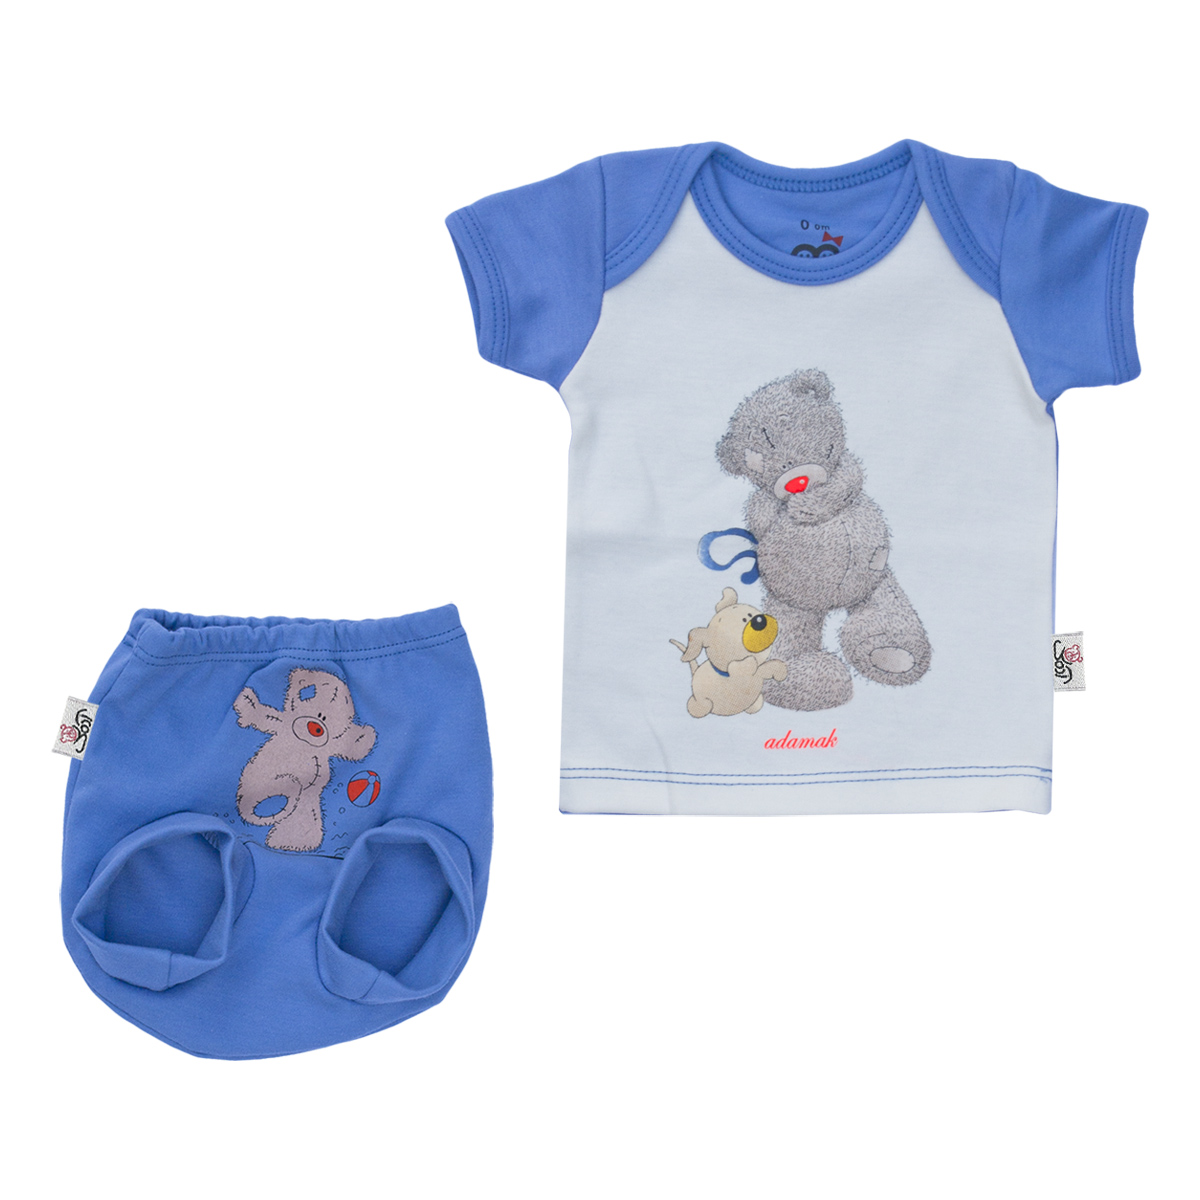 ست تی شرت و شورت نوزادی آدمک طرح خرس پشمالو رنگ آبی -  - 2